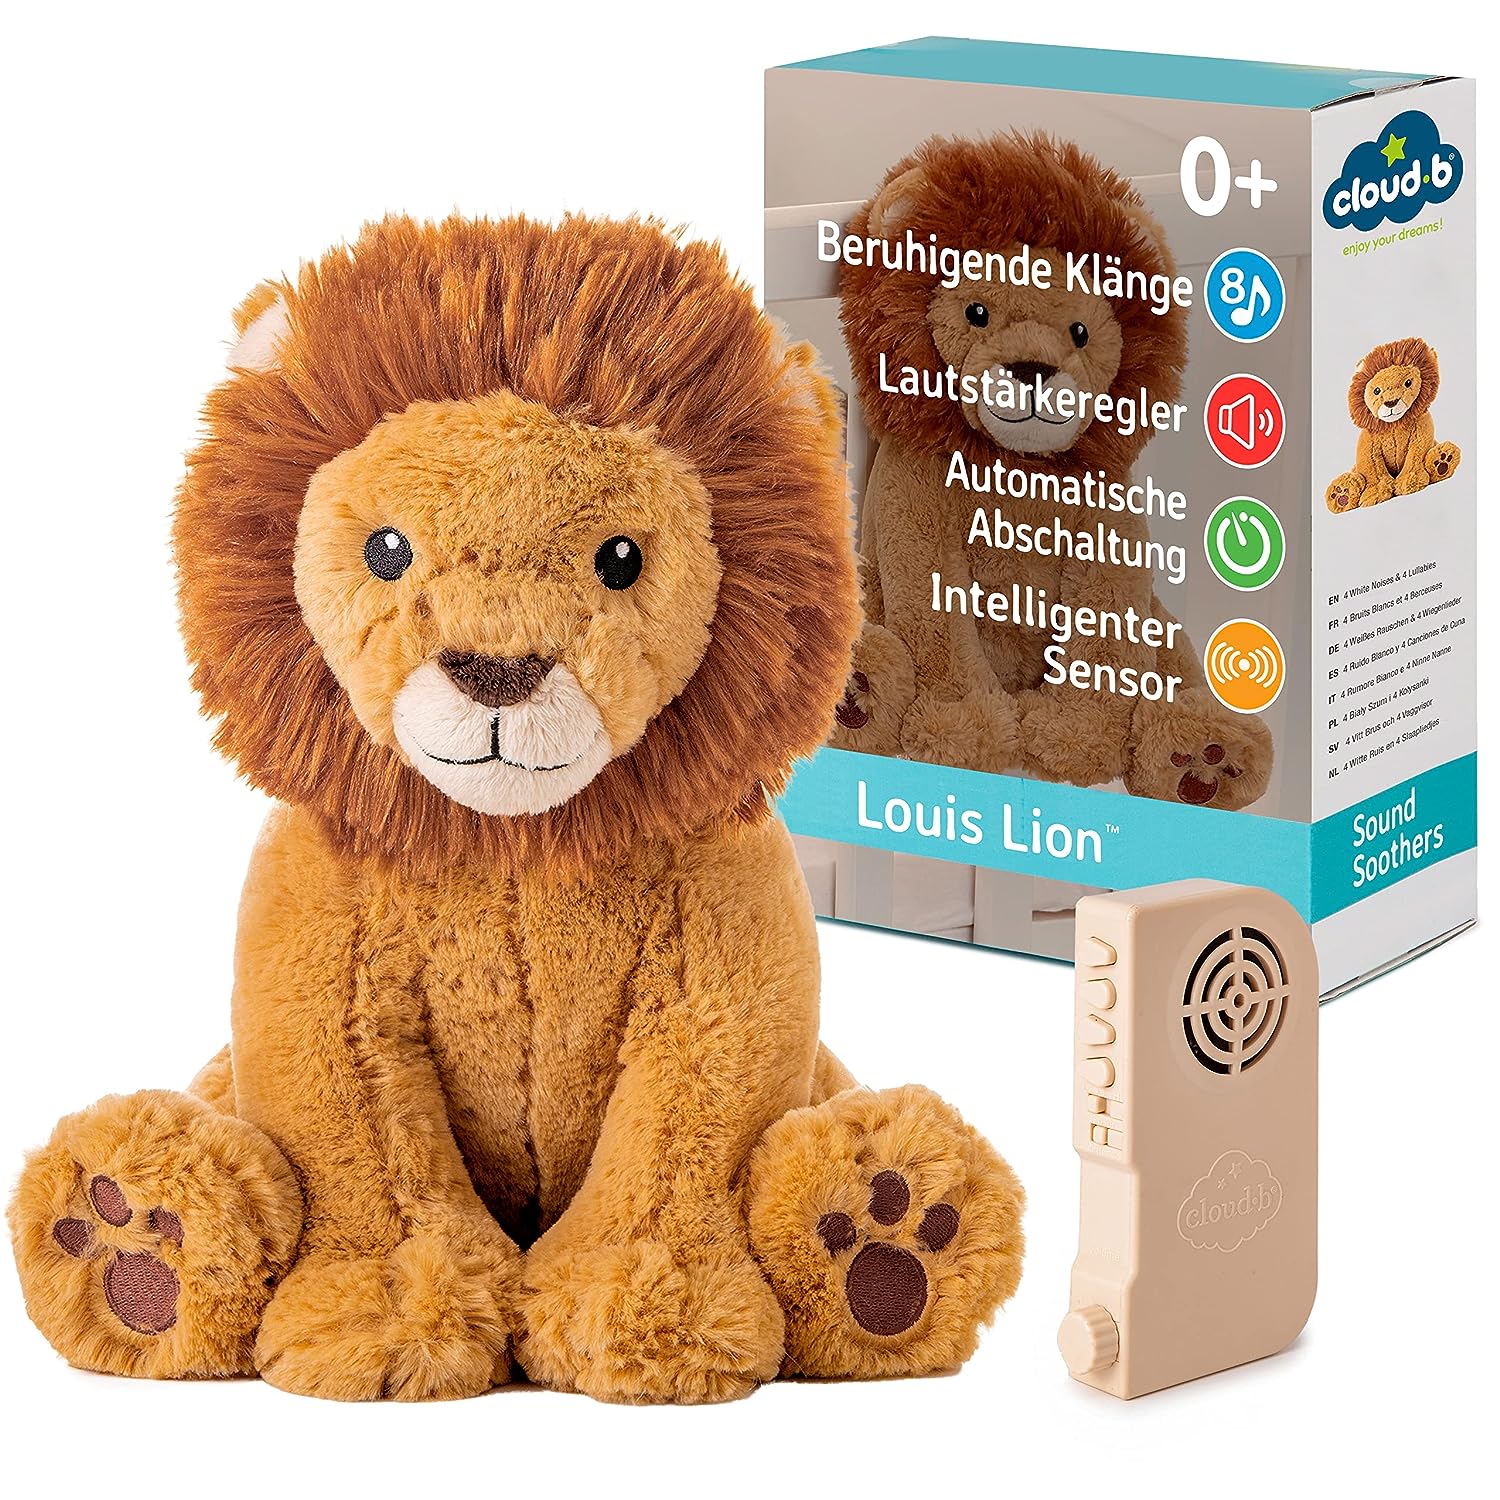 Louis-Lion-Einschlafhilfe-cloud-b-berlindleuxe-löwe-box